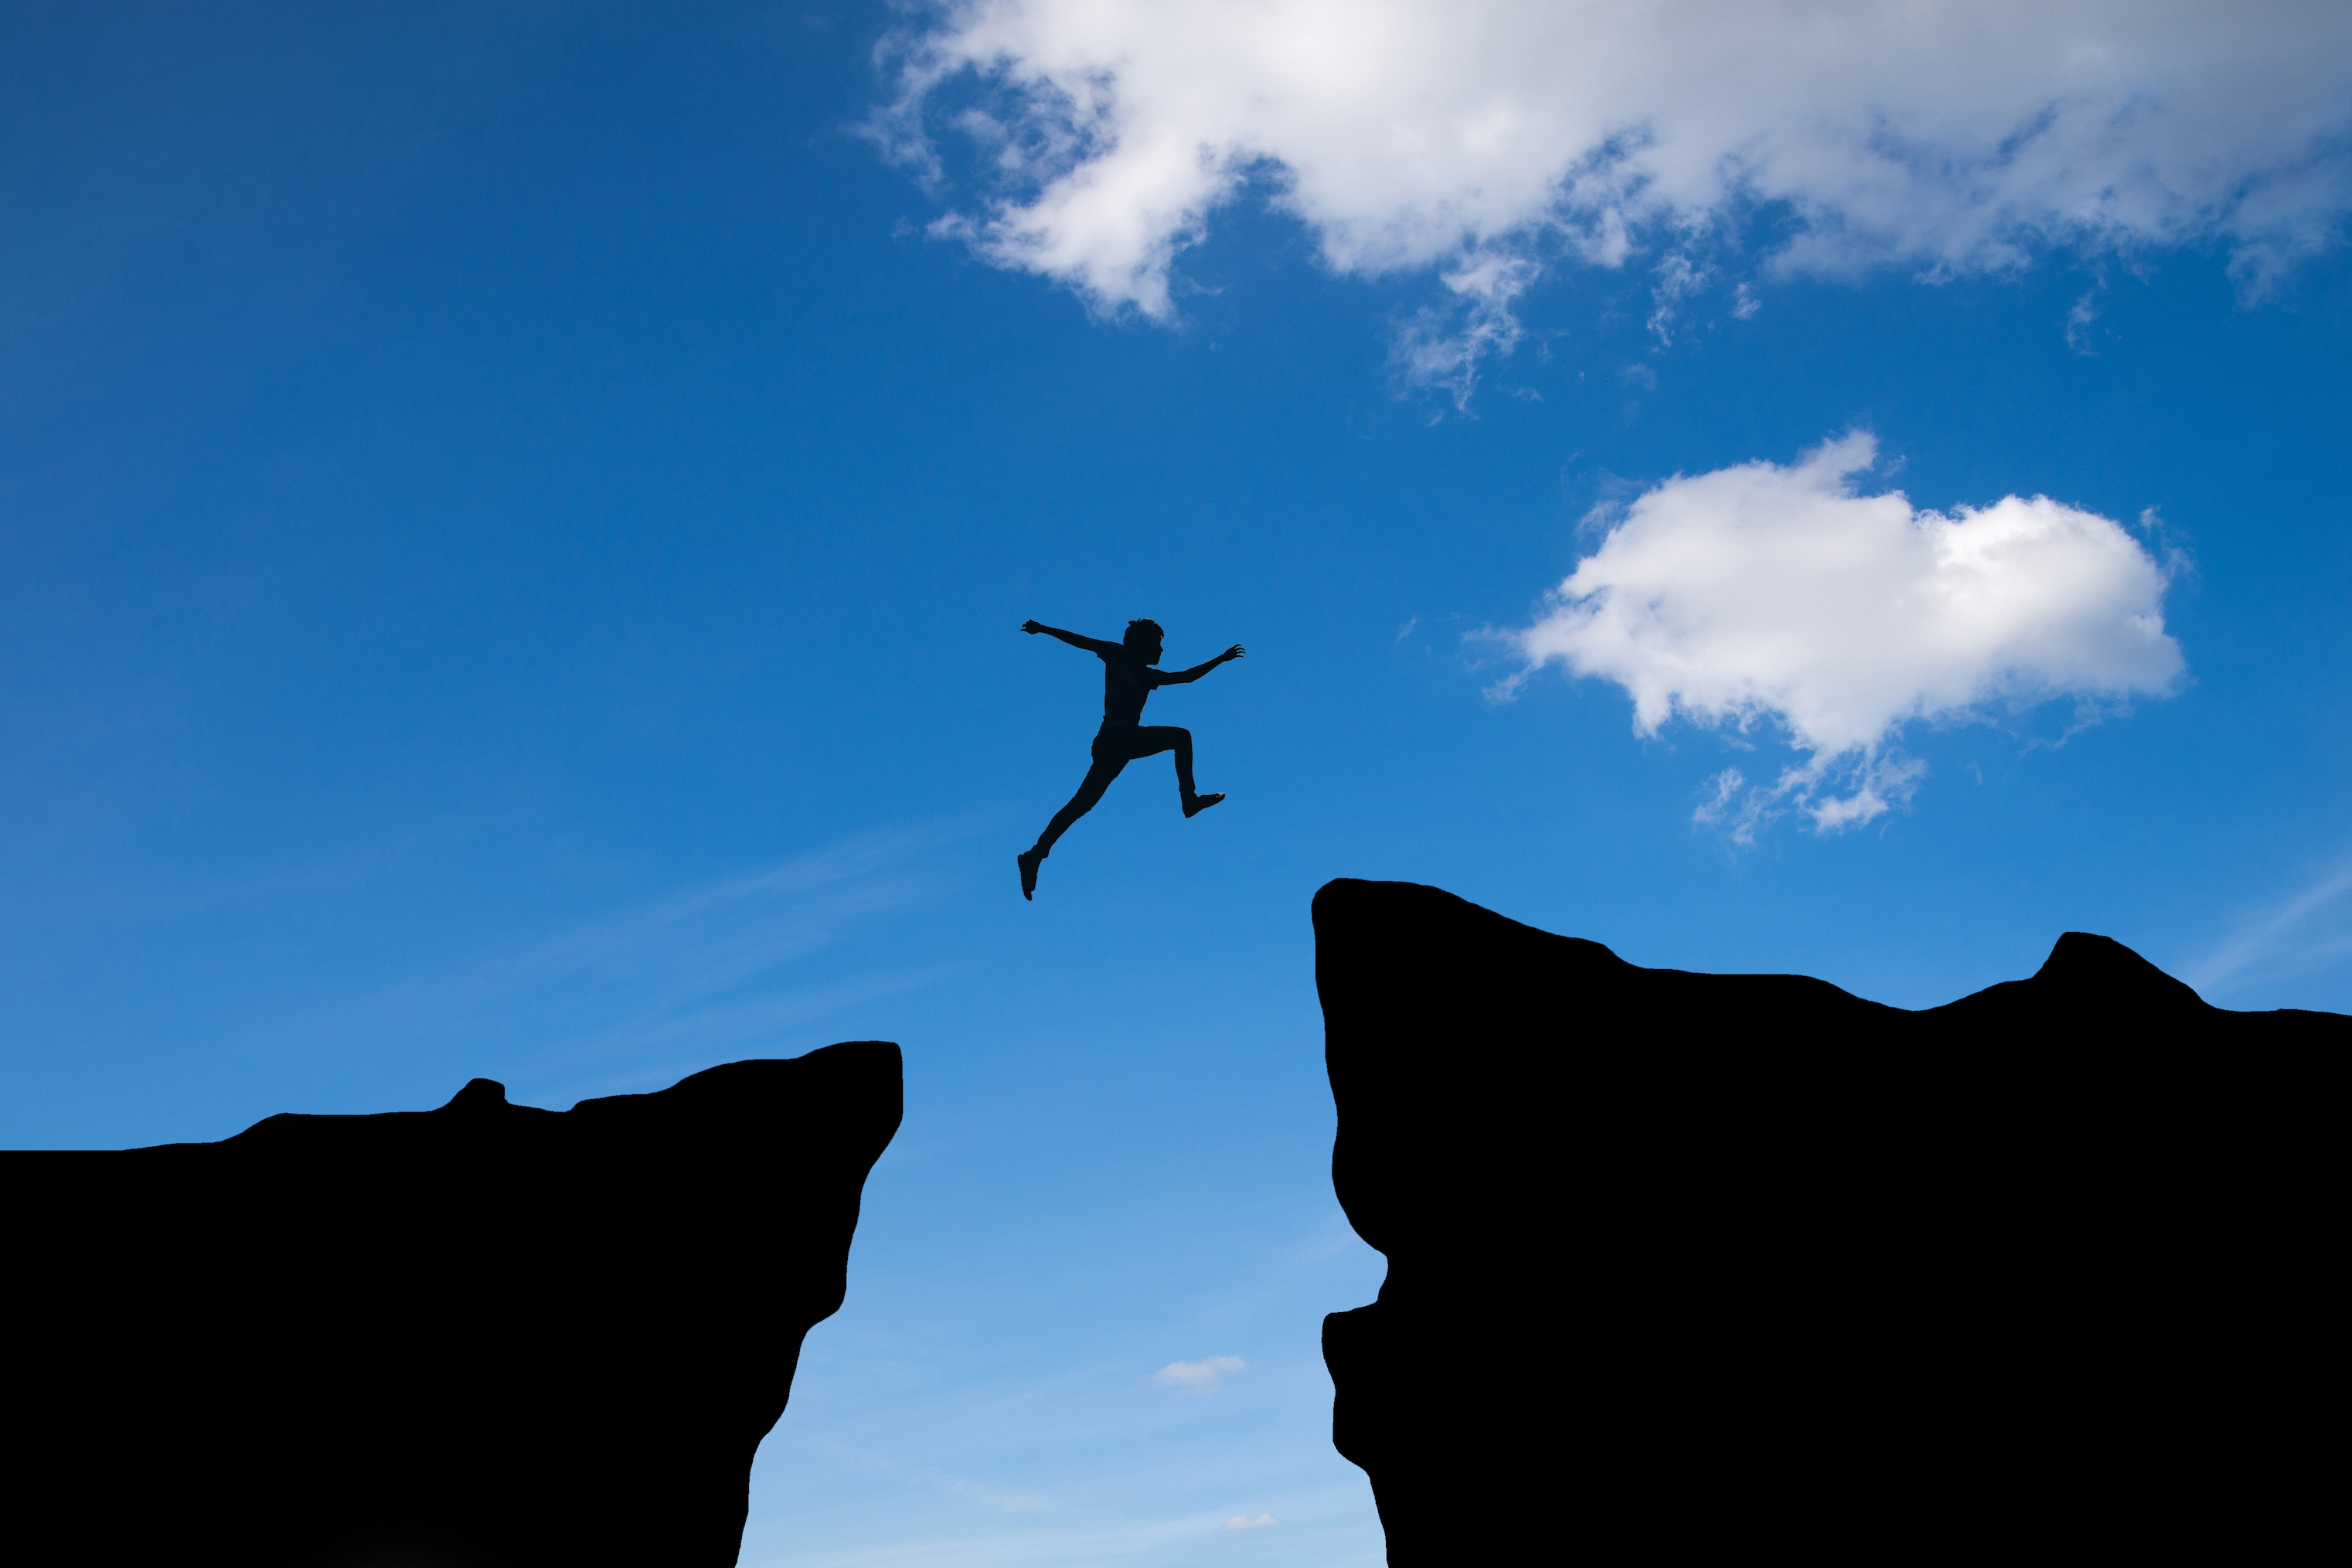 man-jump-through-gap-hill-man-jumping-cliff-blue-sky-business-concept-idea.jpg